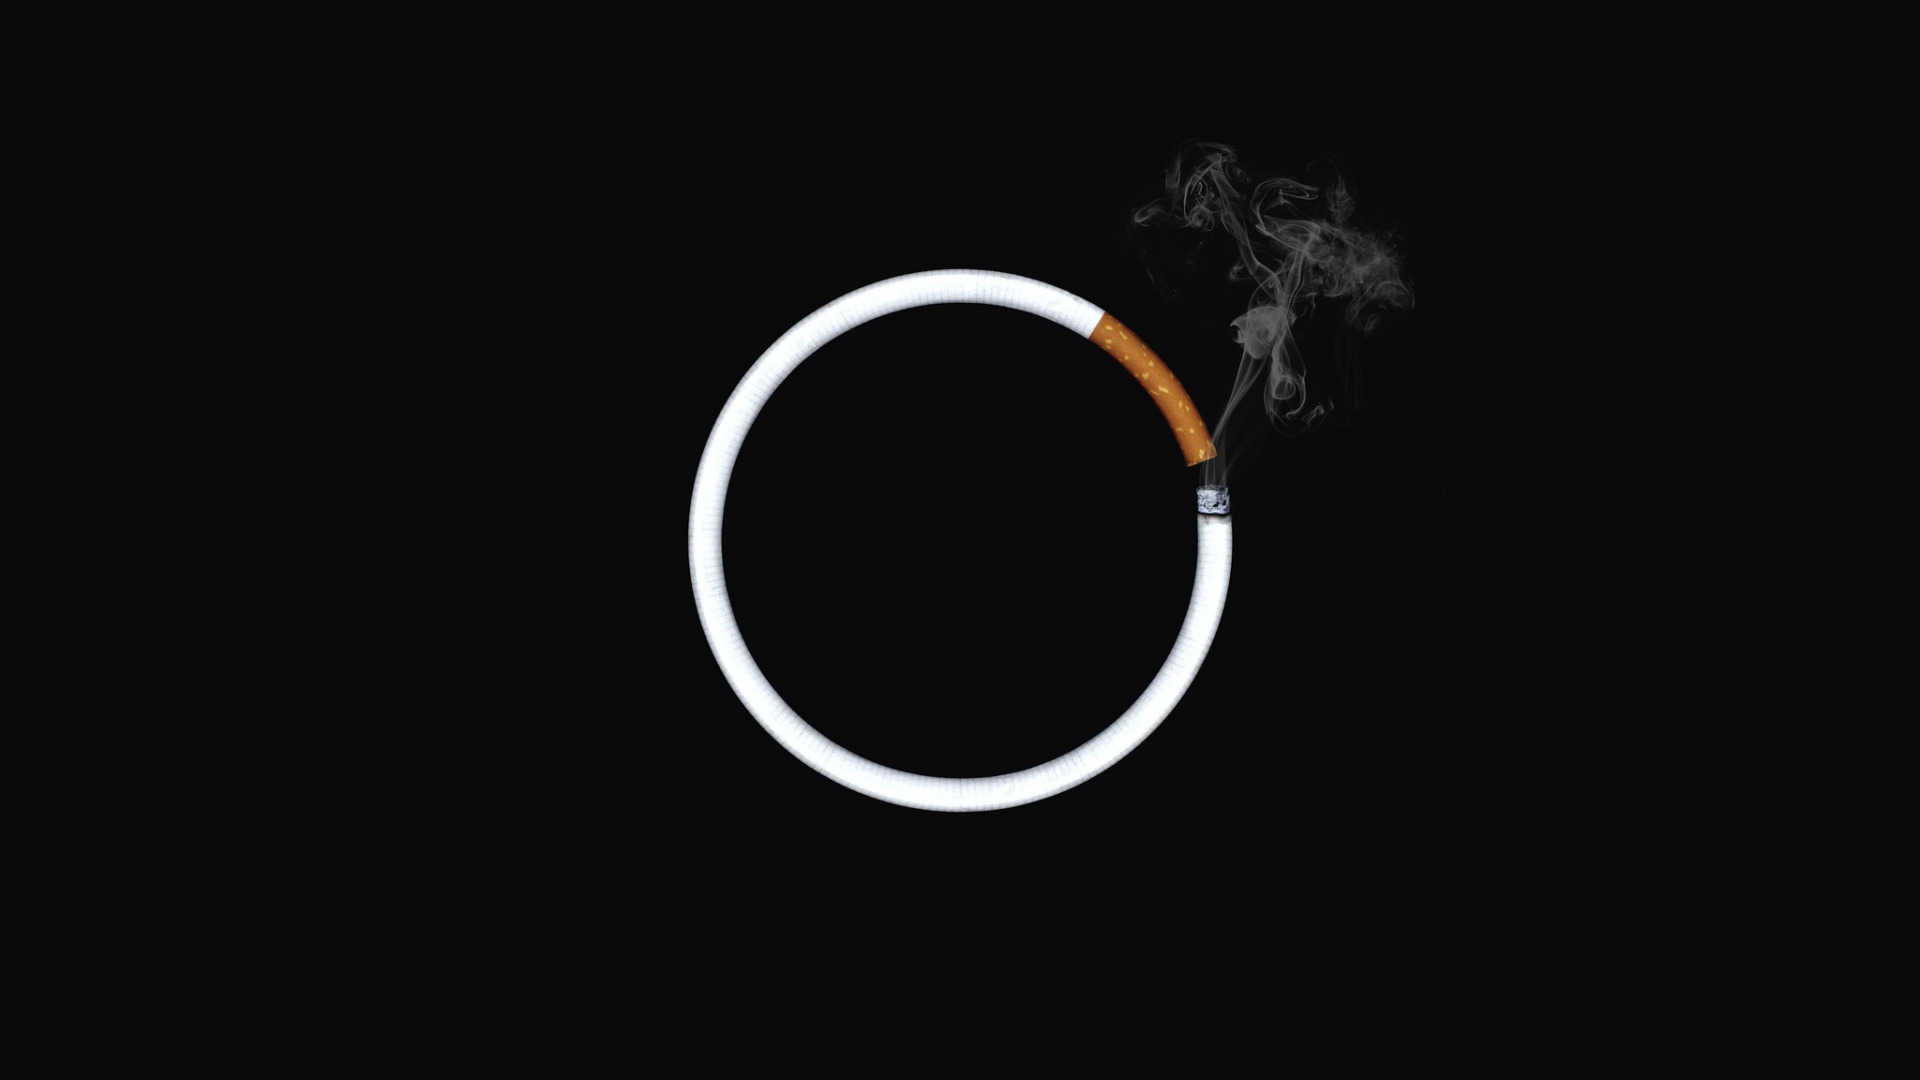 عکس پس زمینه بسیار جالب از یک سیگار دایره ای با بک گراند مشکی